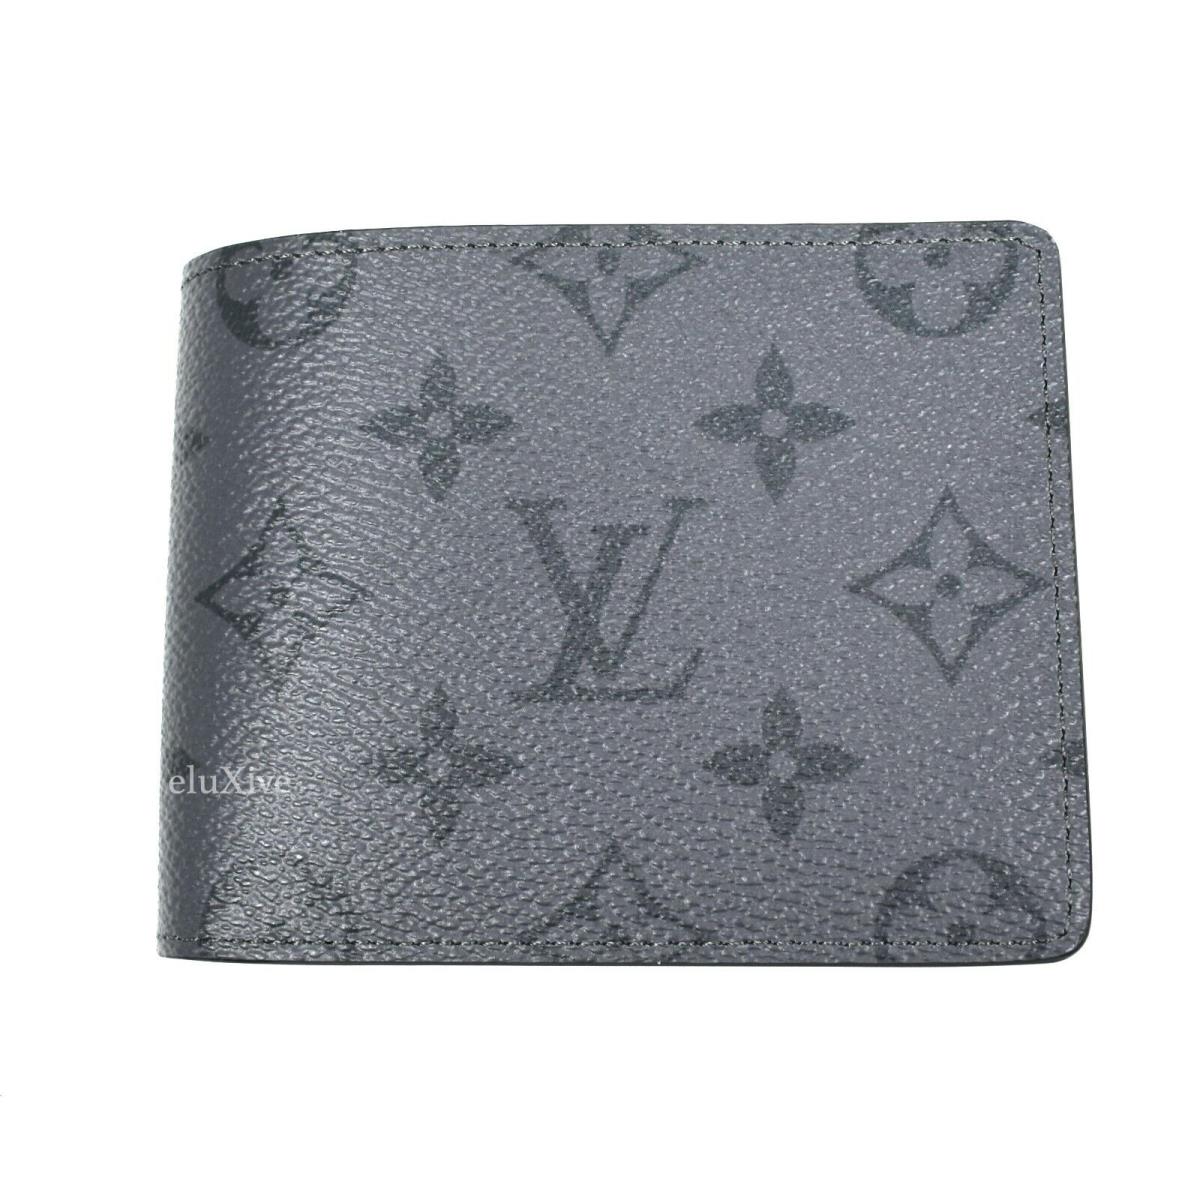 Louis Vuitton Brand - Shop Louis Vuitton best selling | Fash Direct